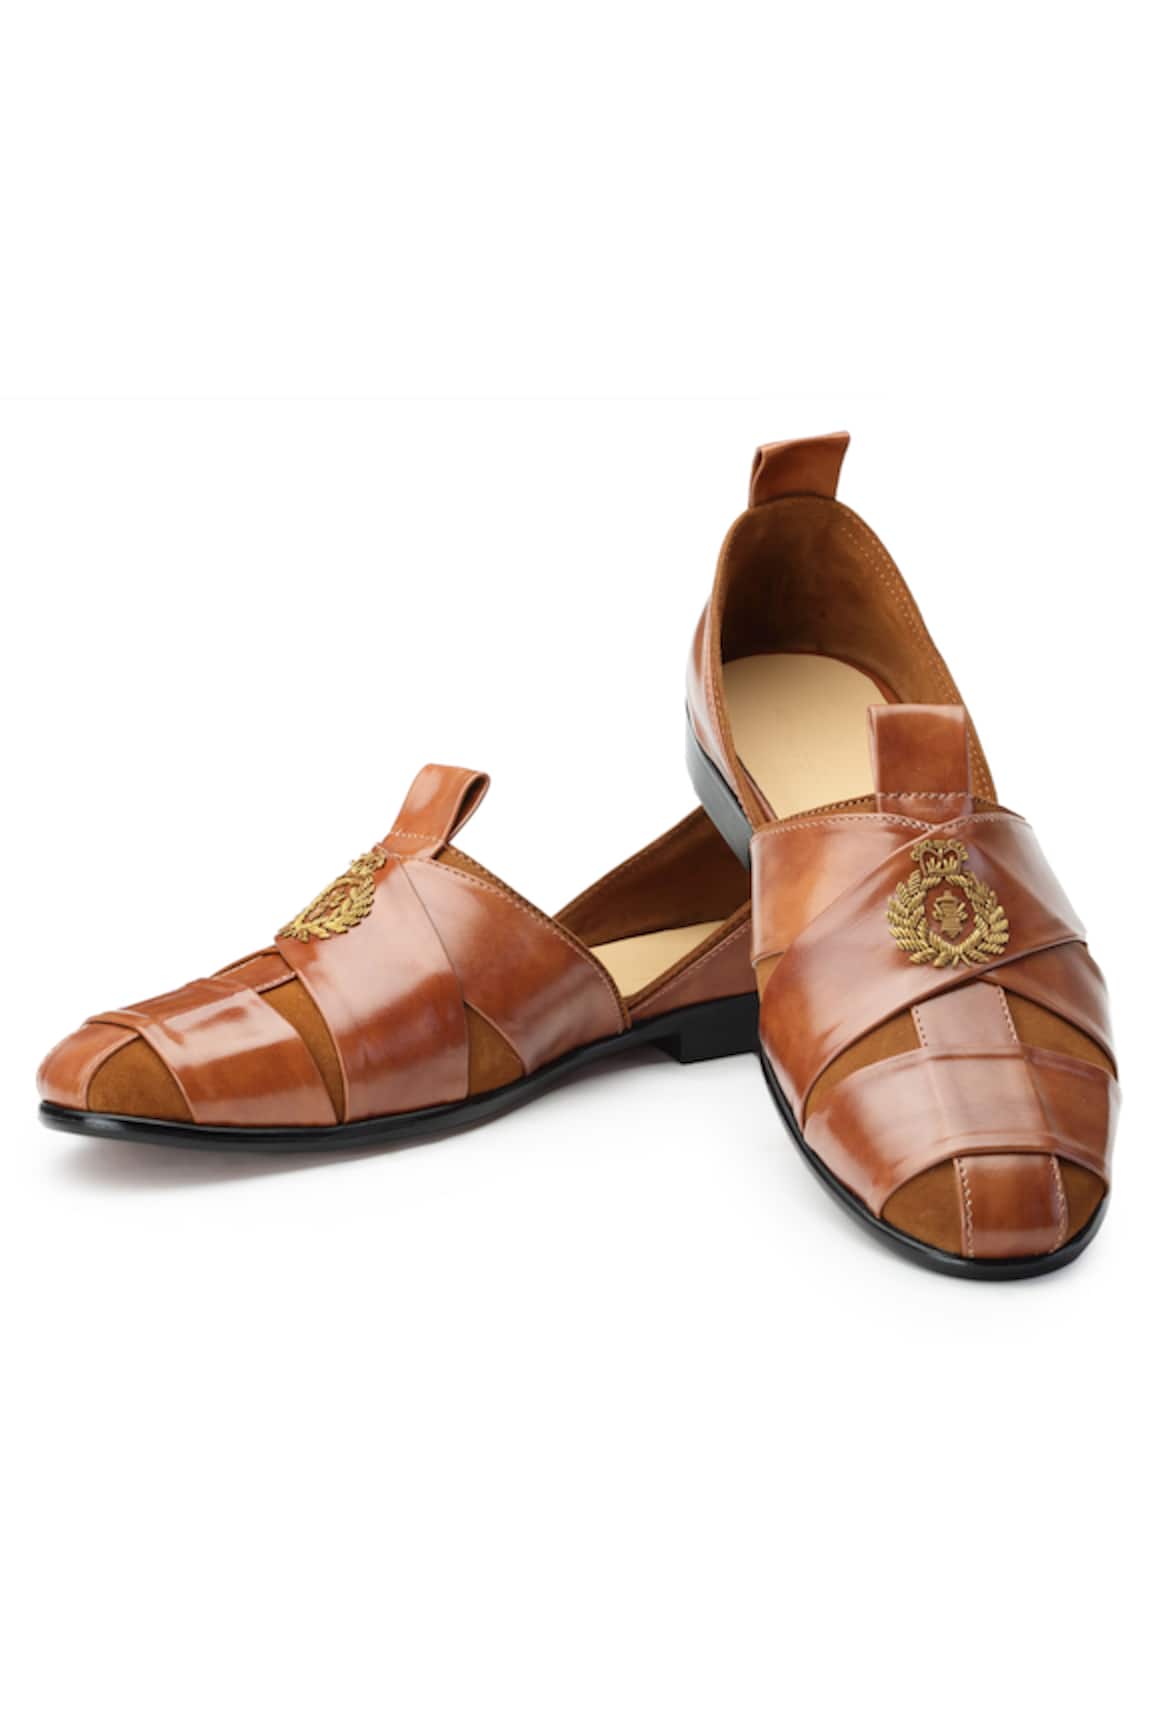 SHUTIQ Sheraz Crown Embroidered Slip-On Shoes